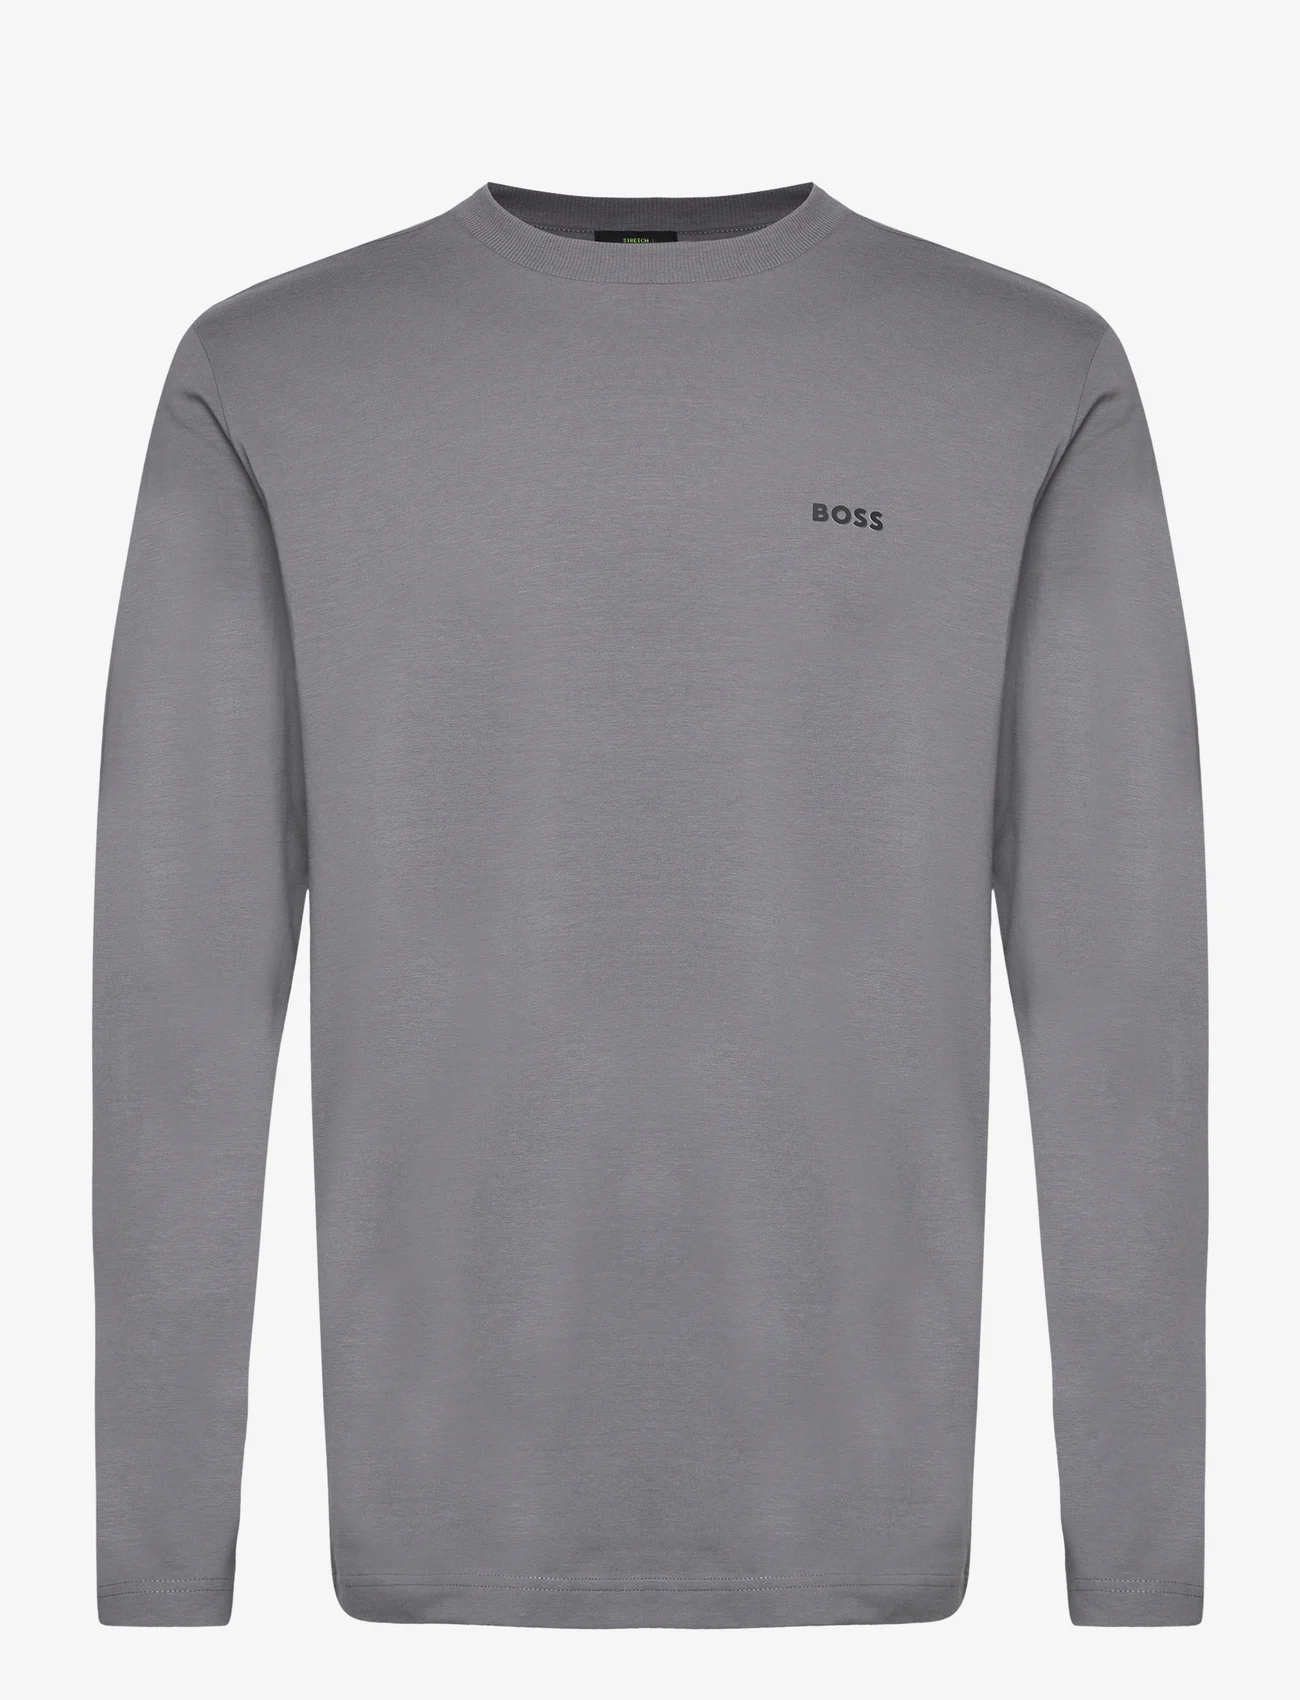 BOSS - Tee Long - laisvalaikio marškinėliai - medium grey - 0